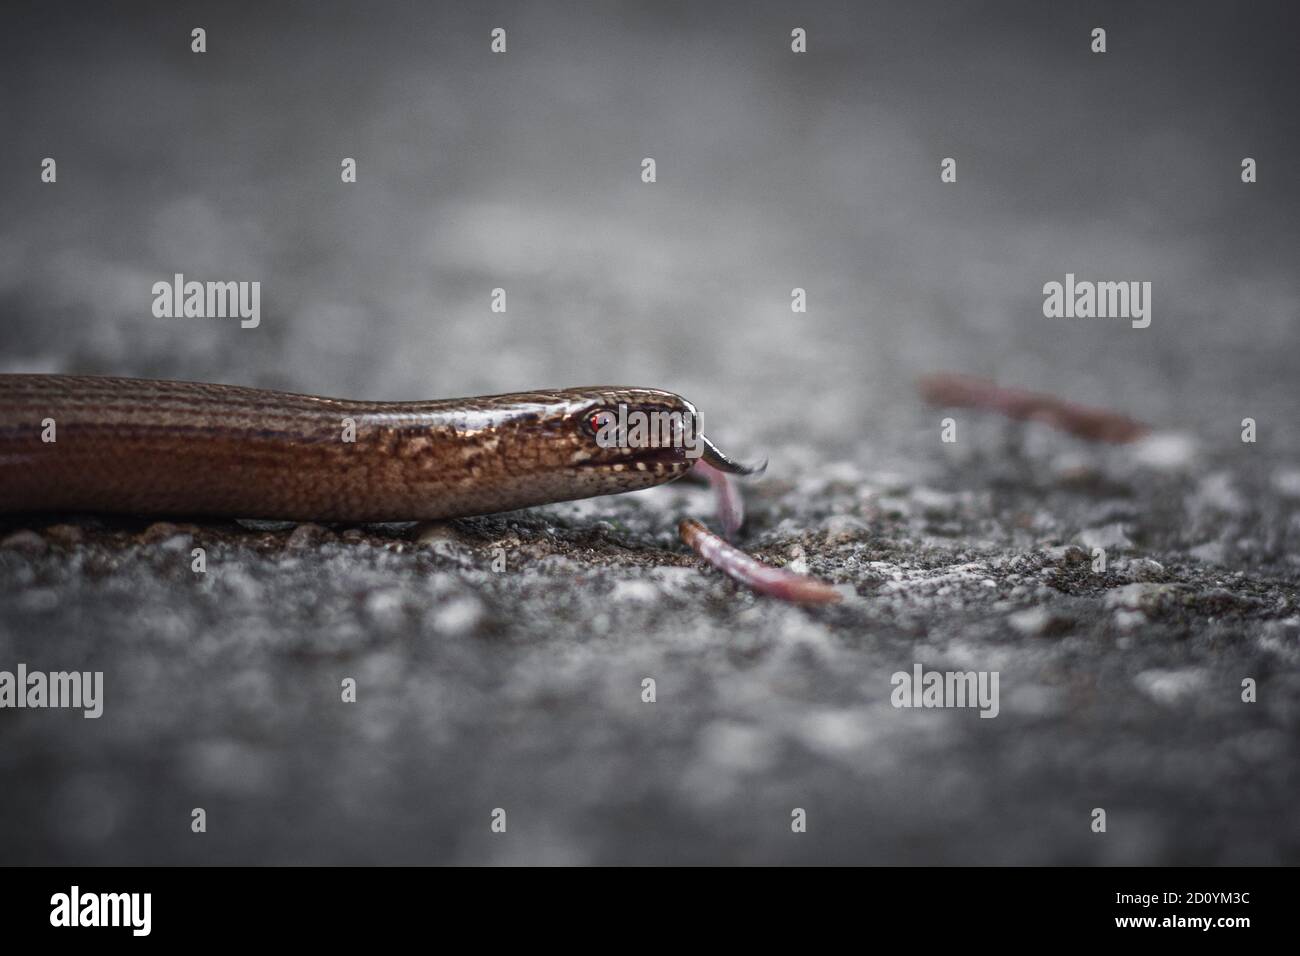 Vita selvaggia, ragno, serpente, natura, bug, beetle, macro ragno shot, macro bug shot, macro ant, antman close up shot, web Foto Stock